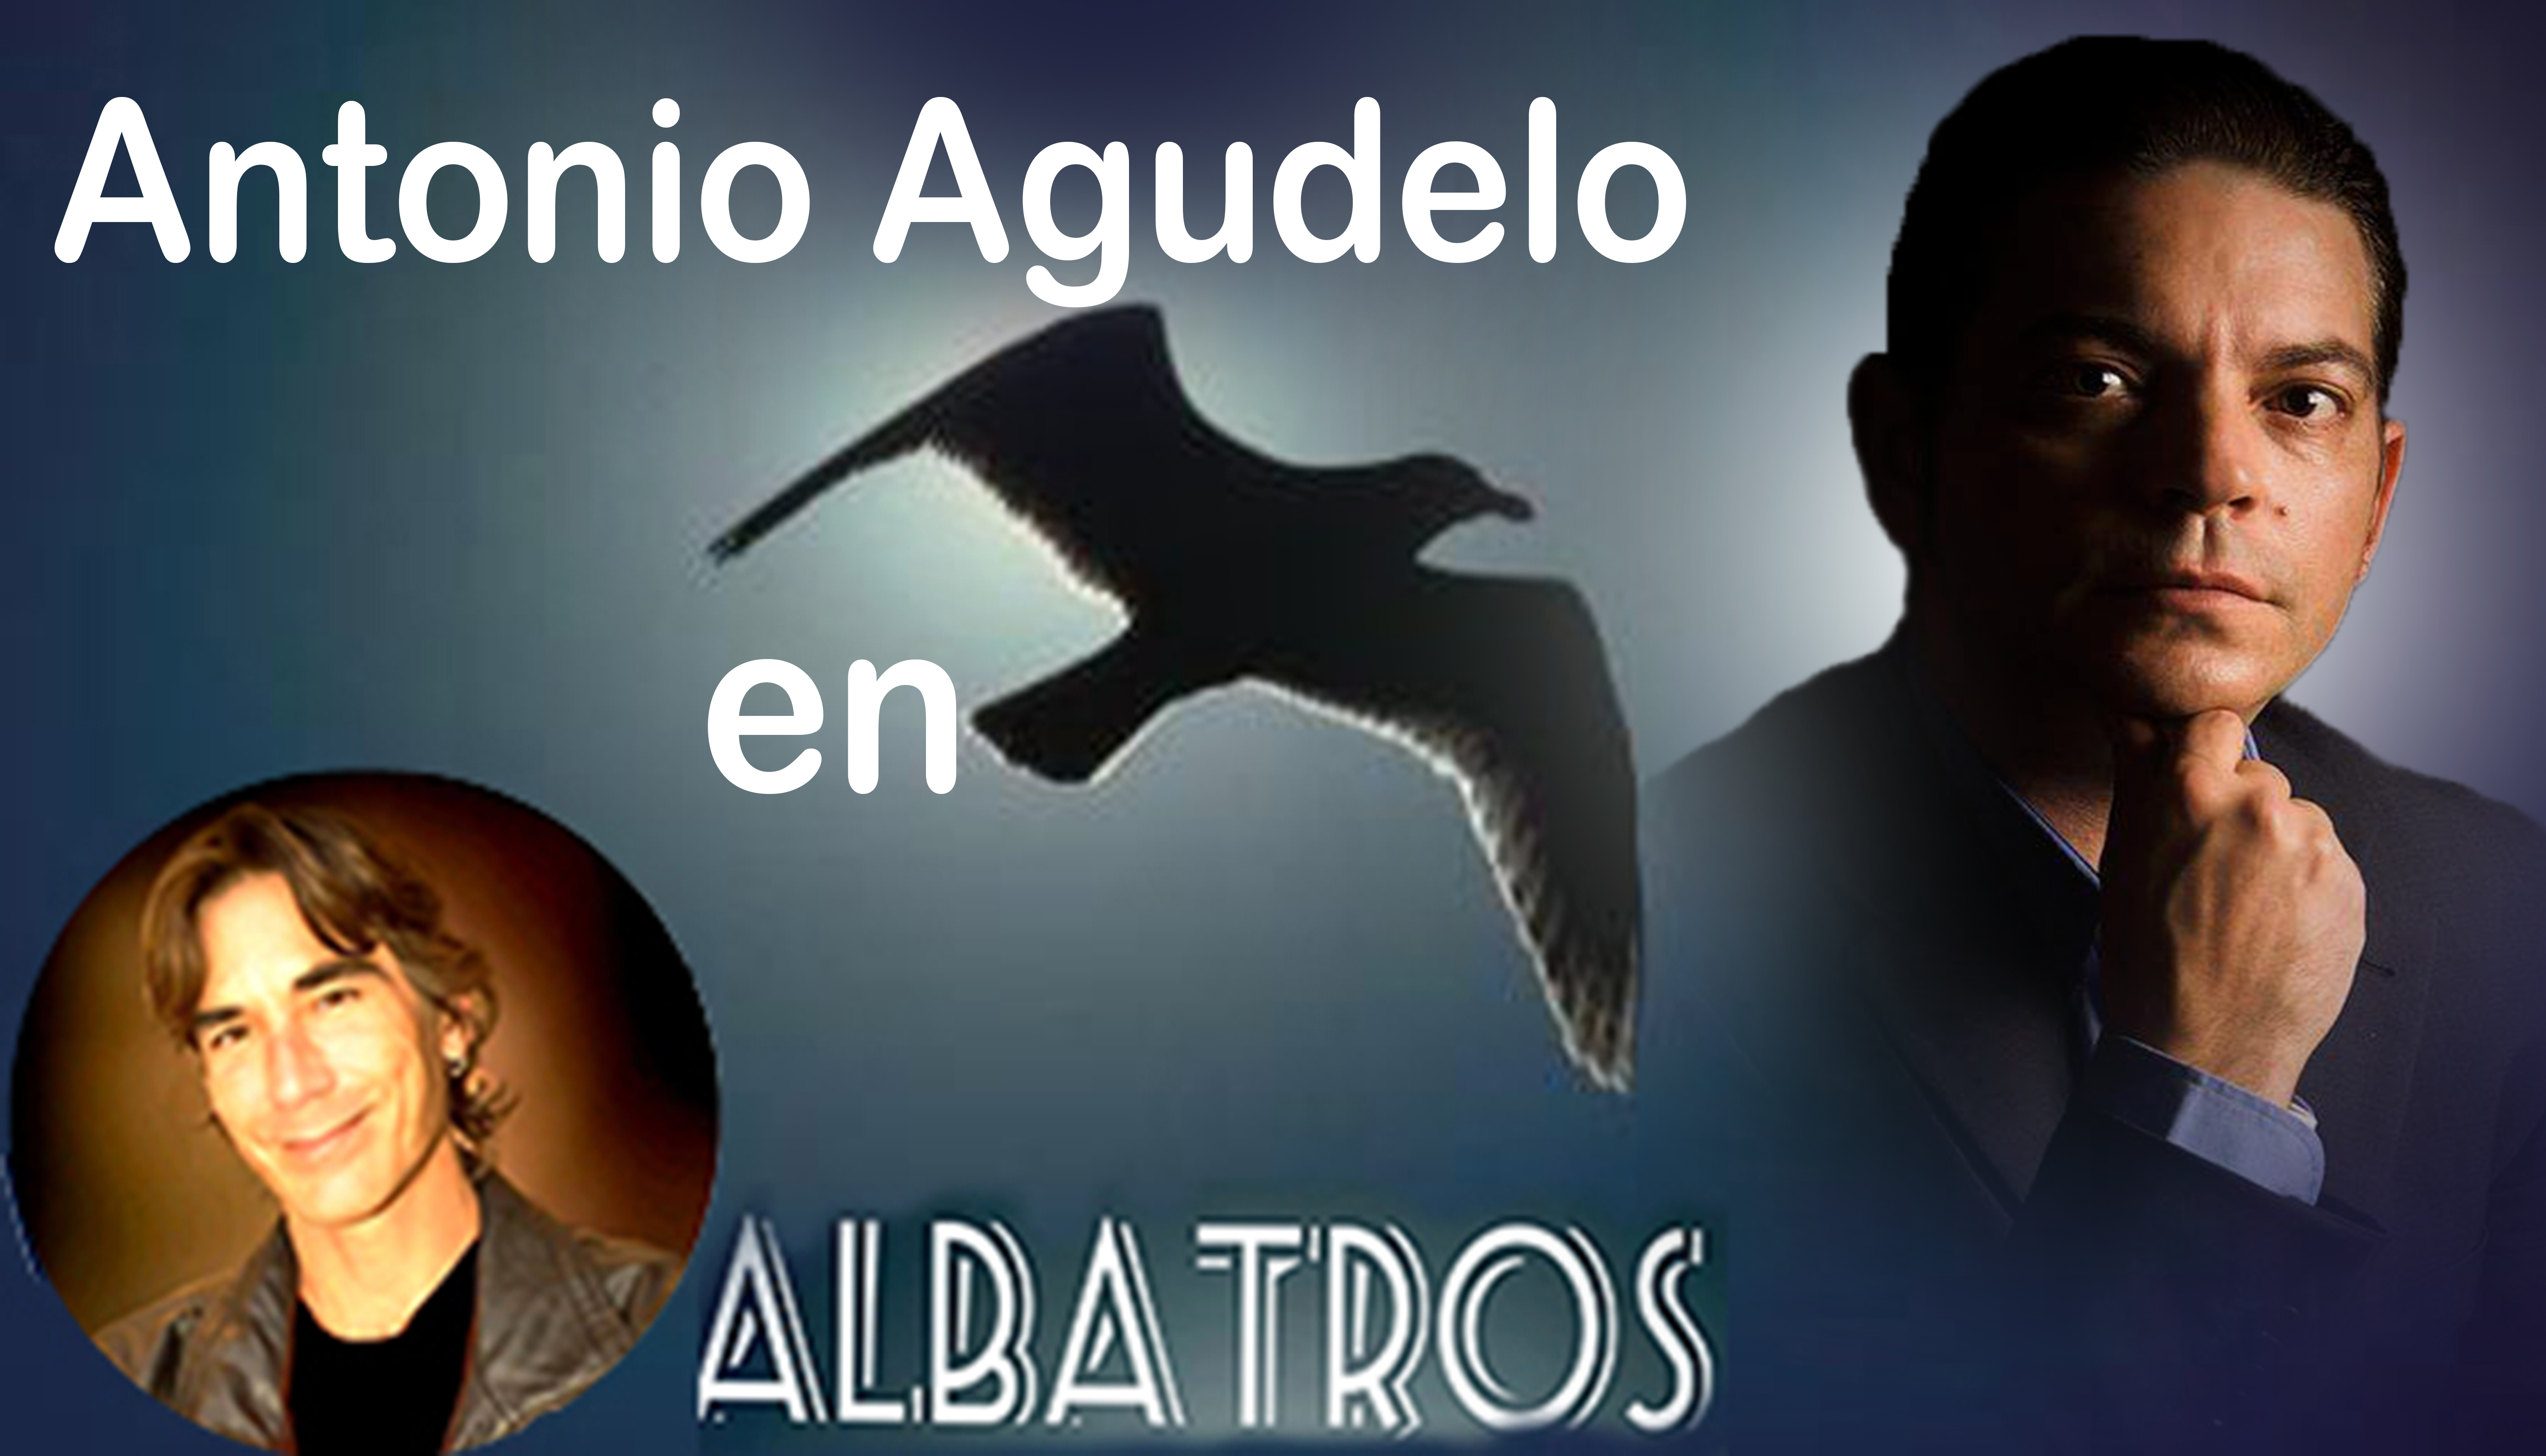 https://0201.nccdn.net/1_2/000/000/10e/e63/agudelo-en-albatros.jpg